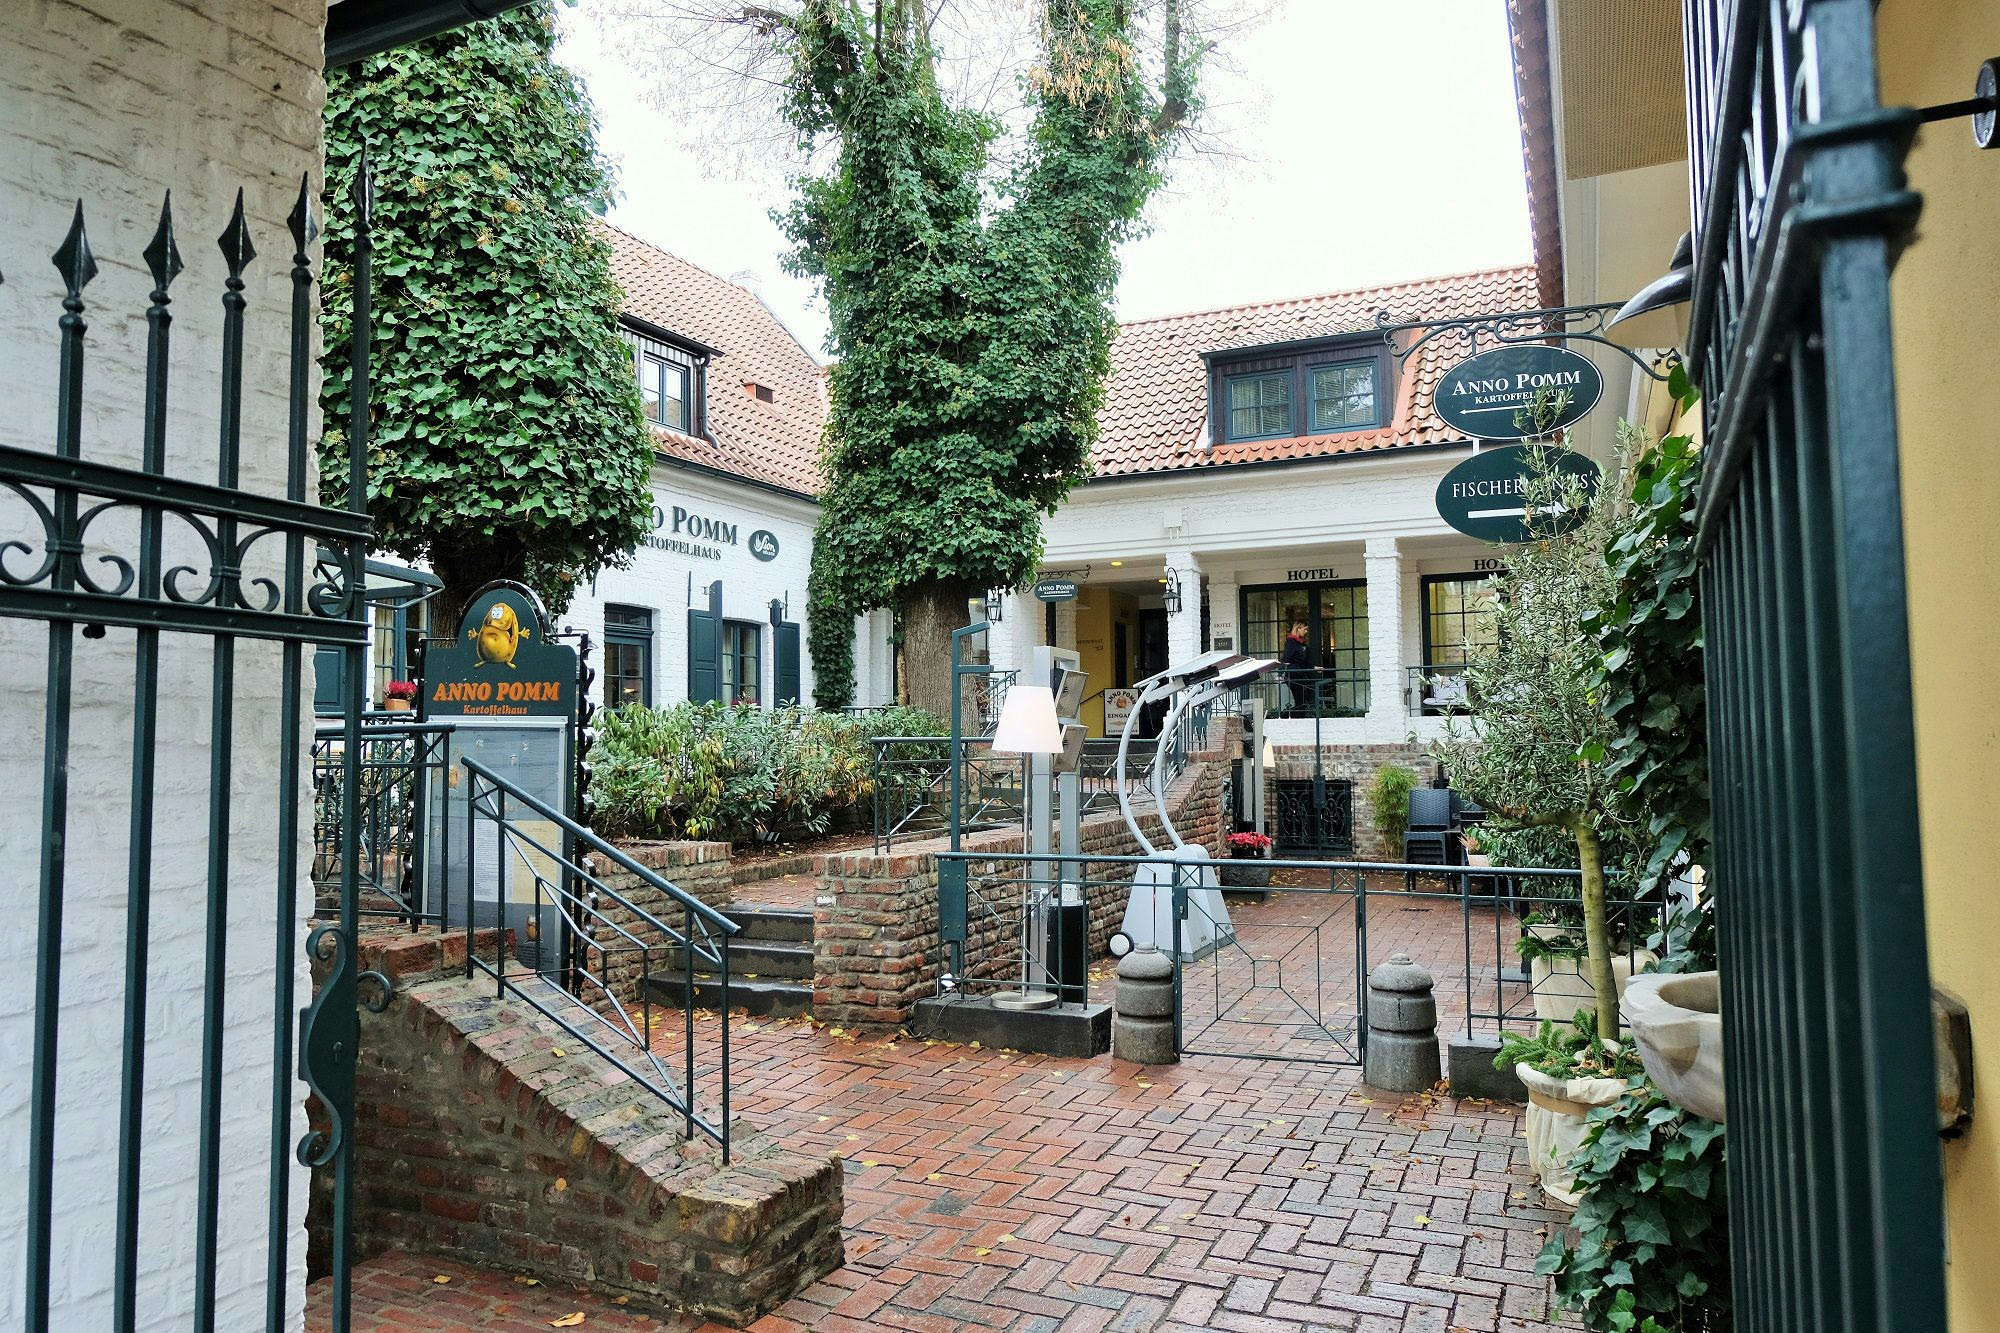 Nur das ehemalige Wohngebäude im Hof, in dem das Restaurant Anno Pomm untergebracht ist, steht unter Denkmalschutz.